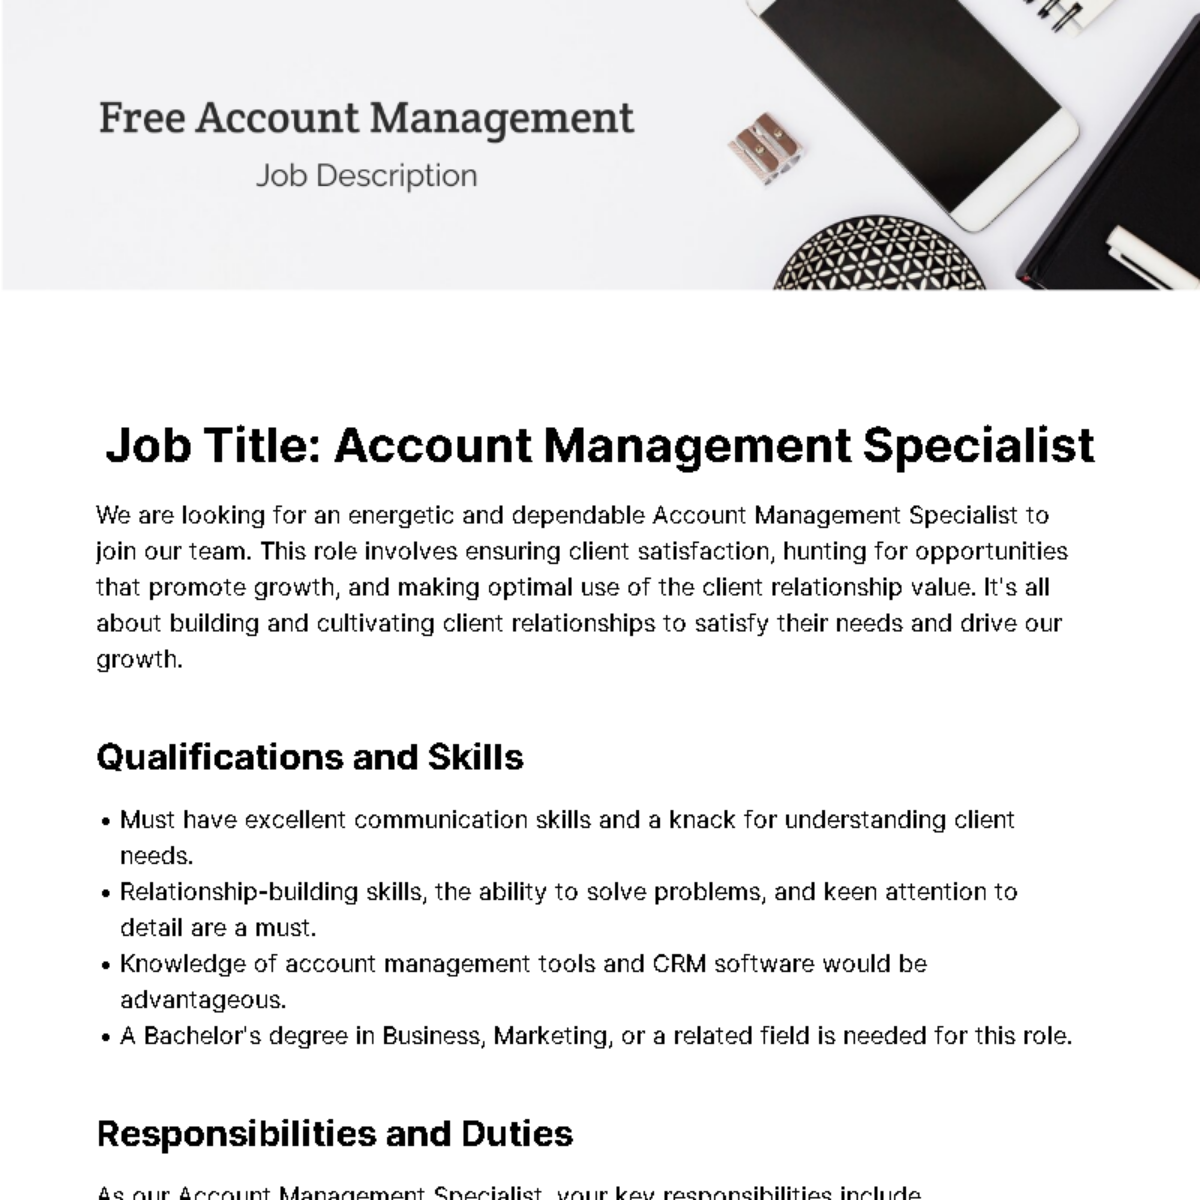 Free Account Management Job Description Template